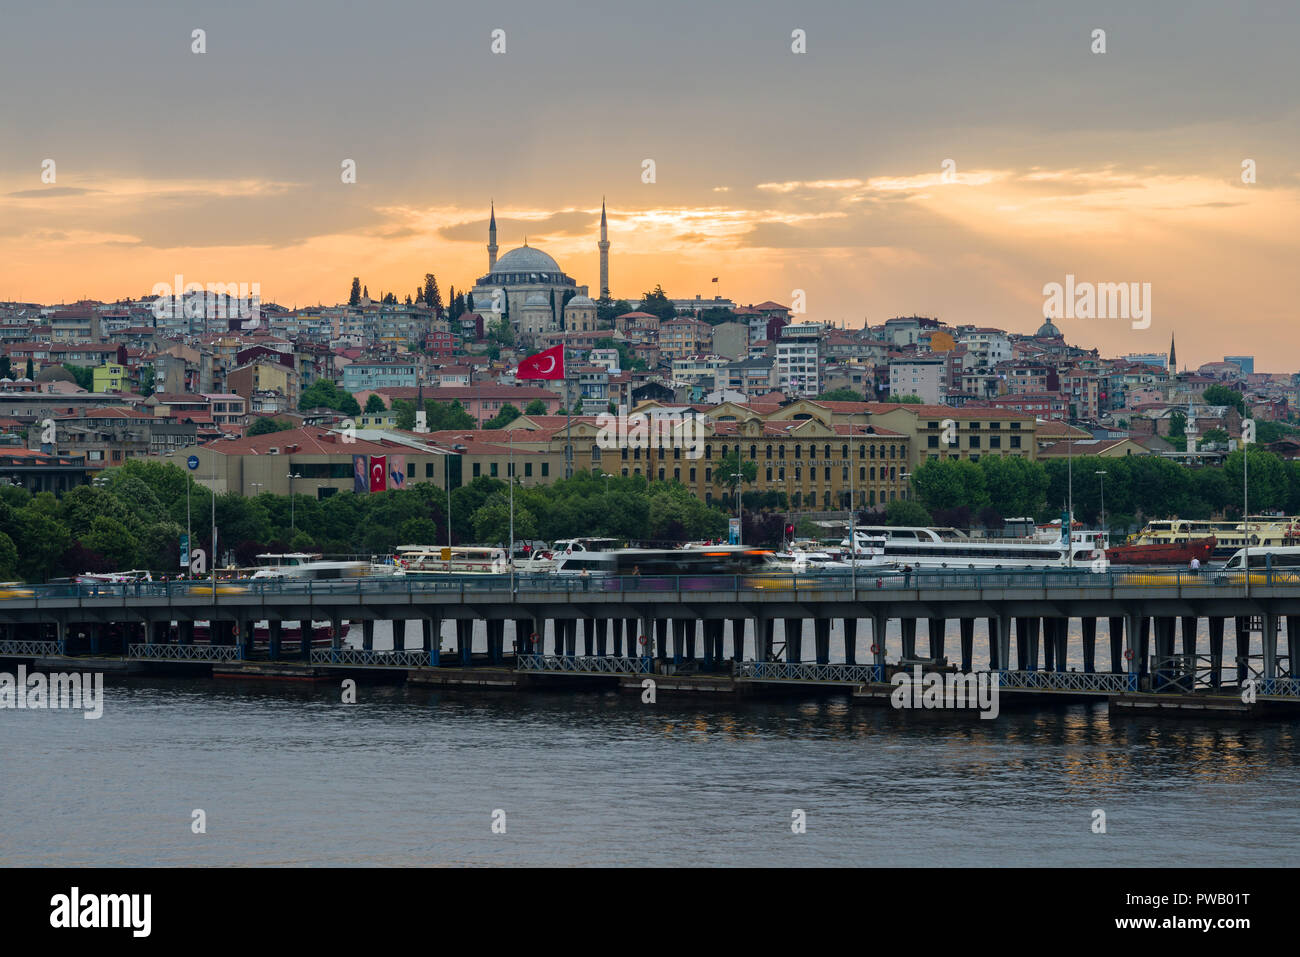 Anzeigen von Unkapanı Brücke mit Verkehr und das Goldene Horn mit Moschee im Hintergrund bei Sonnenuntergang, Istanbul, Türkei Stockfoto